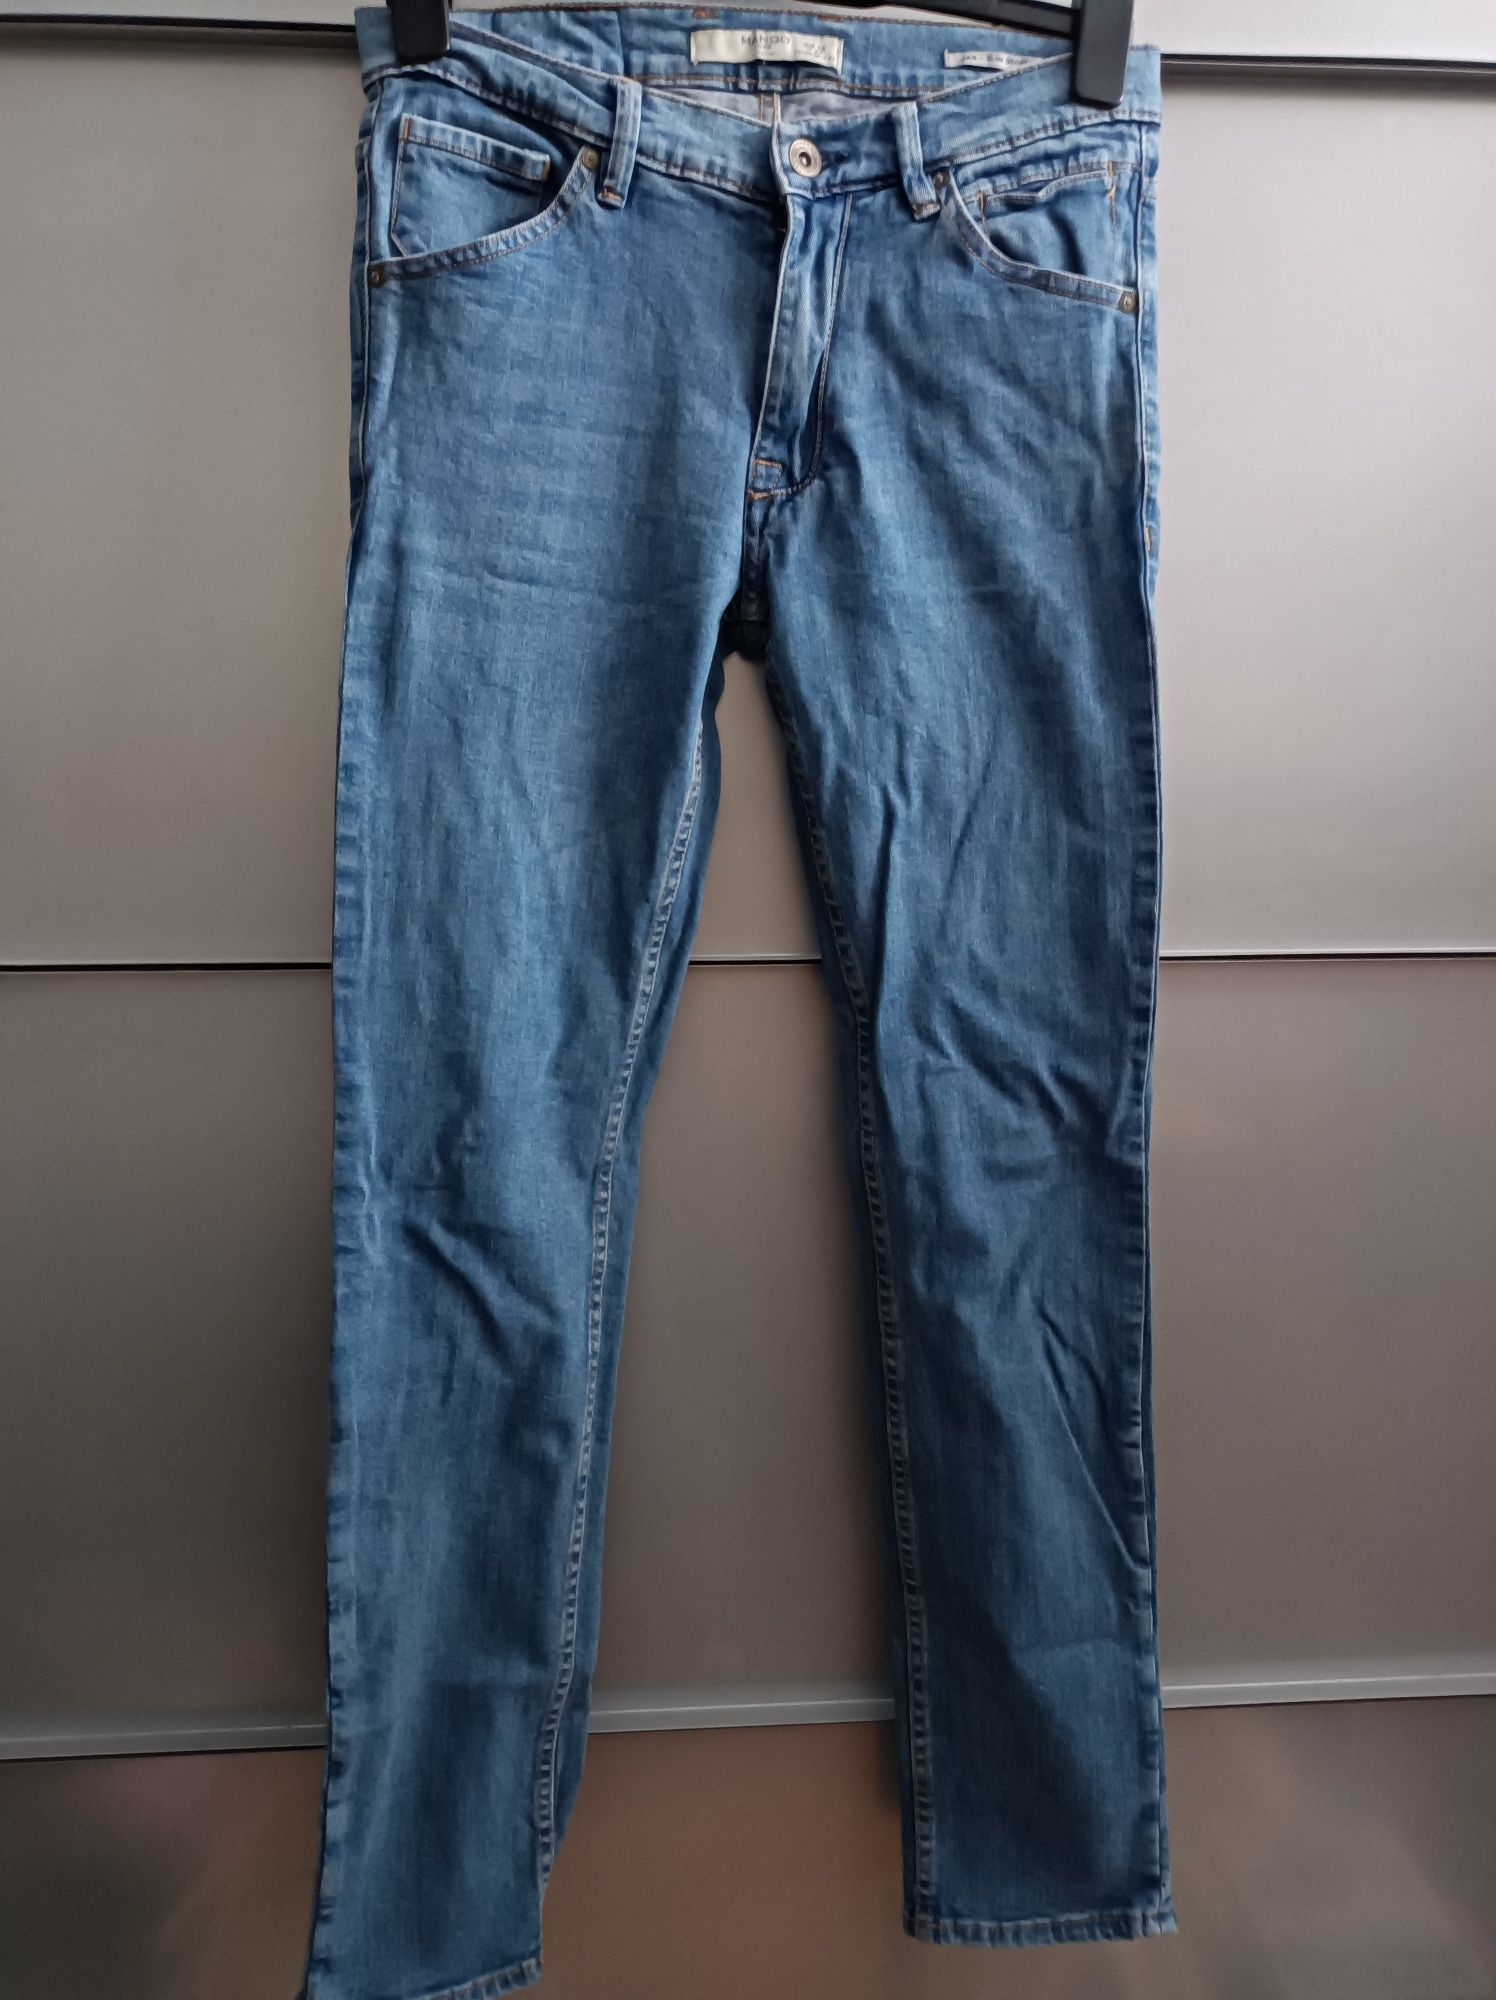 Spodnie jeansowe proste nogawki roz M